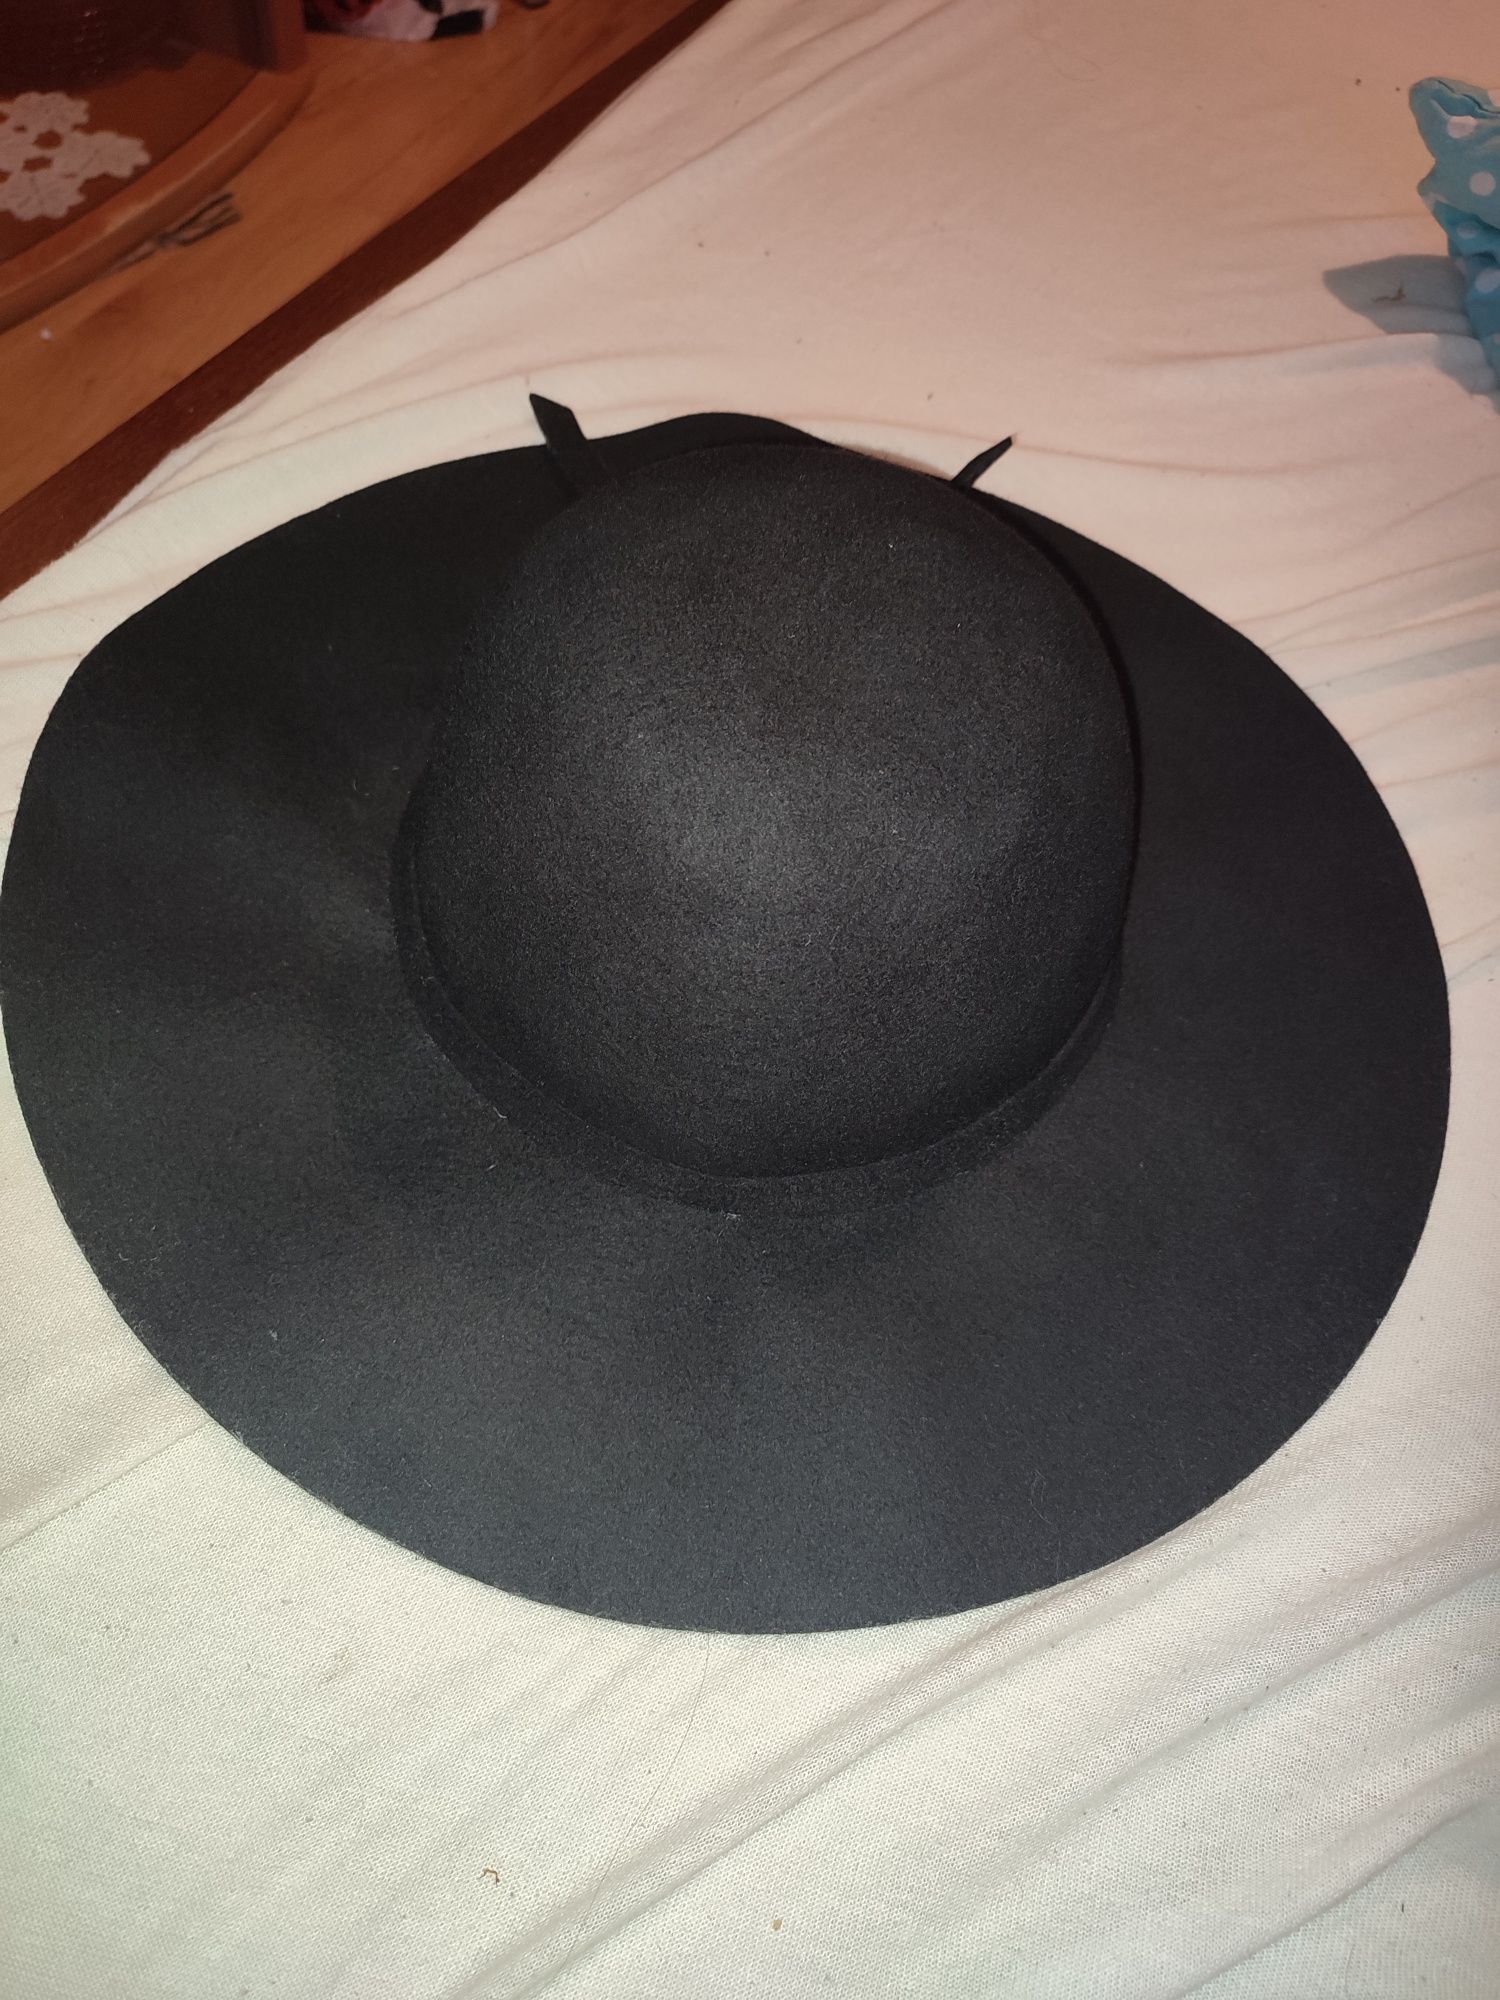 Czarny kapelusz wełniany